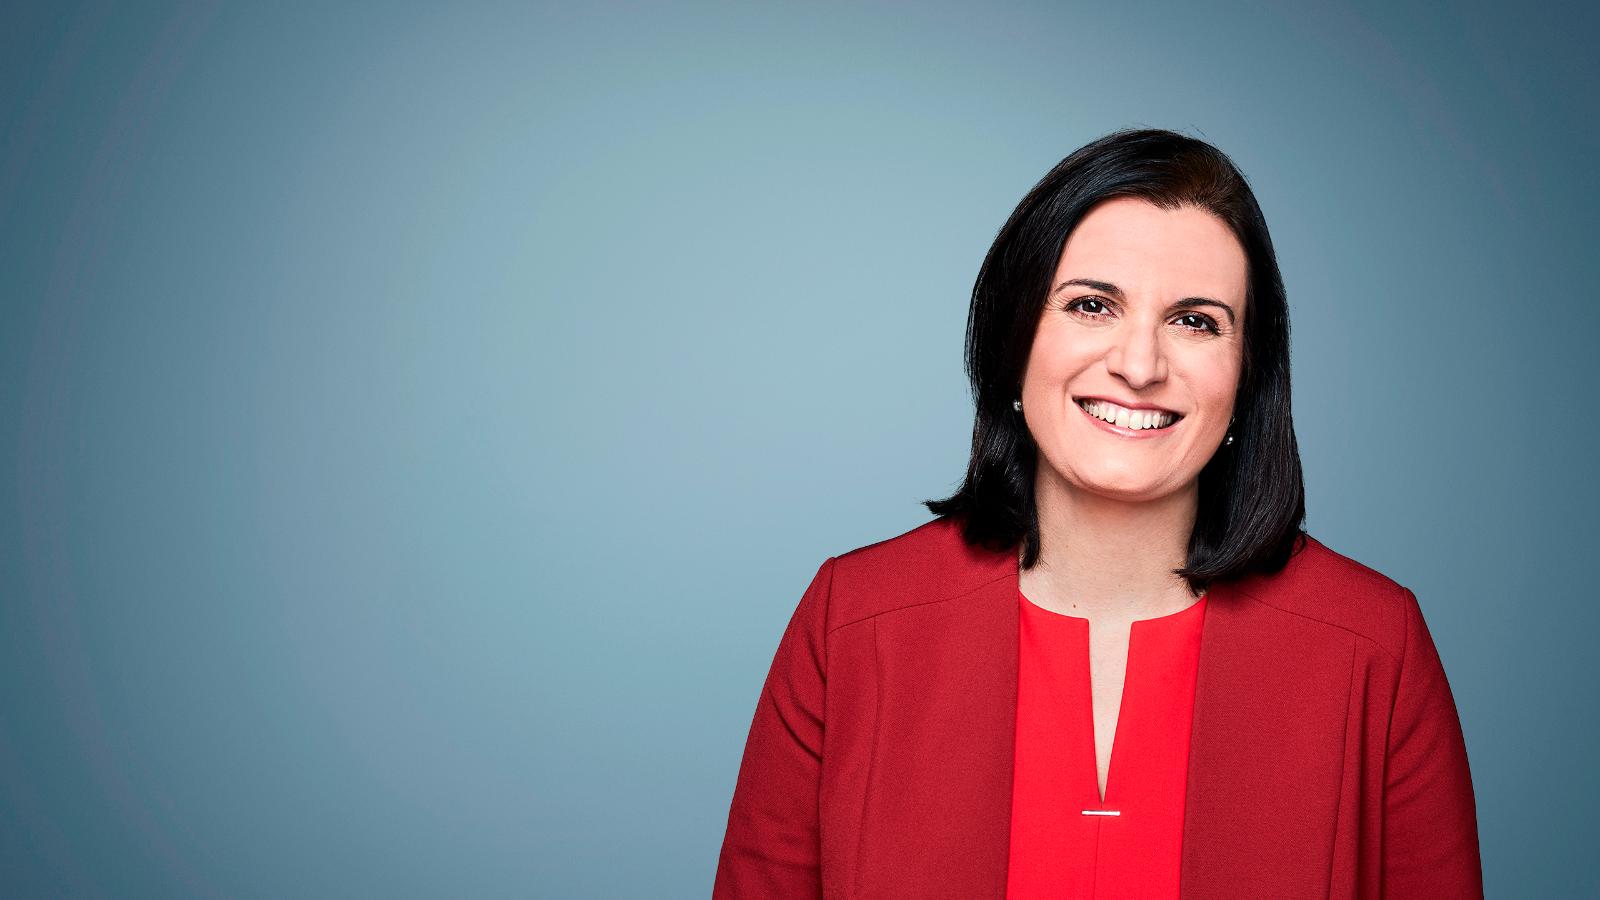 Cnn Profiles Laura Bernardini Vice President Of News For Cnnus Cnn